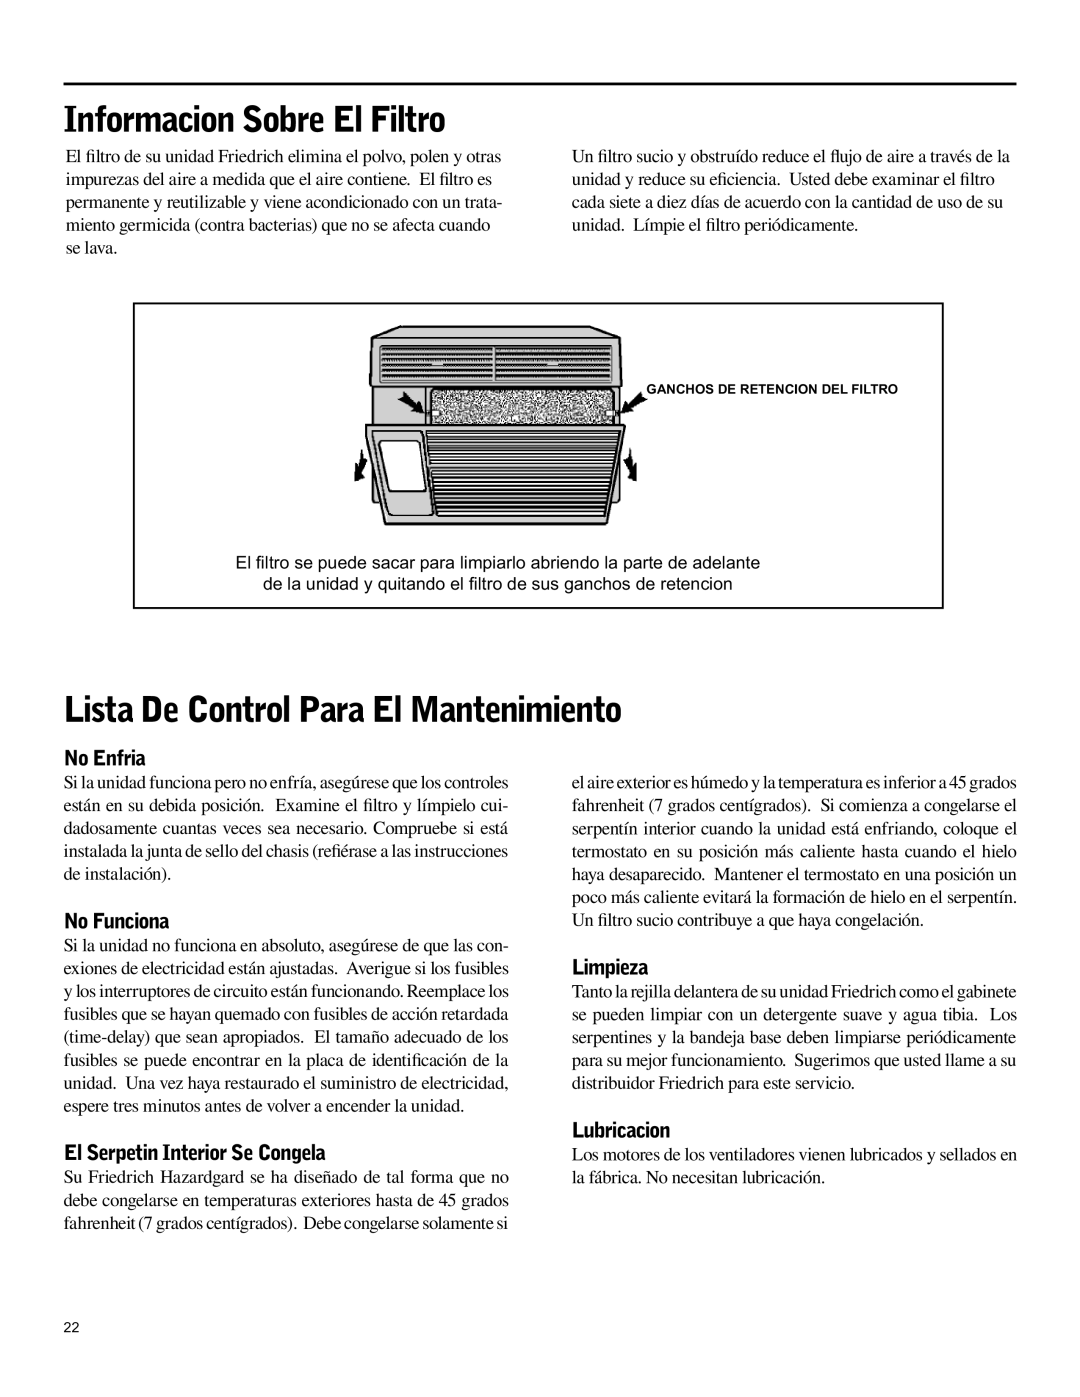 Friedrich SH15 Informacion Sobre El Filtro, Lista De Control Para El Mantenimiento, No Enfria, No Funciona, Limpieza 